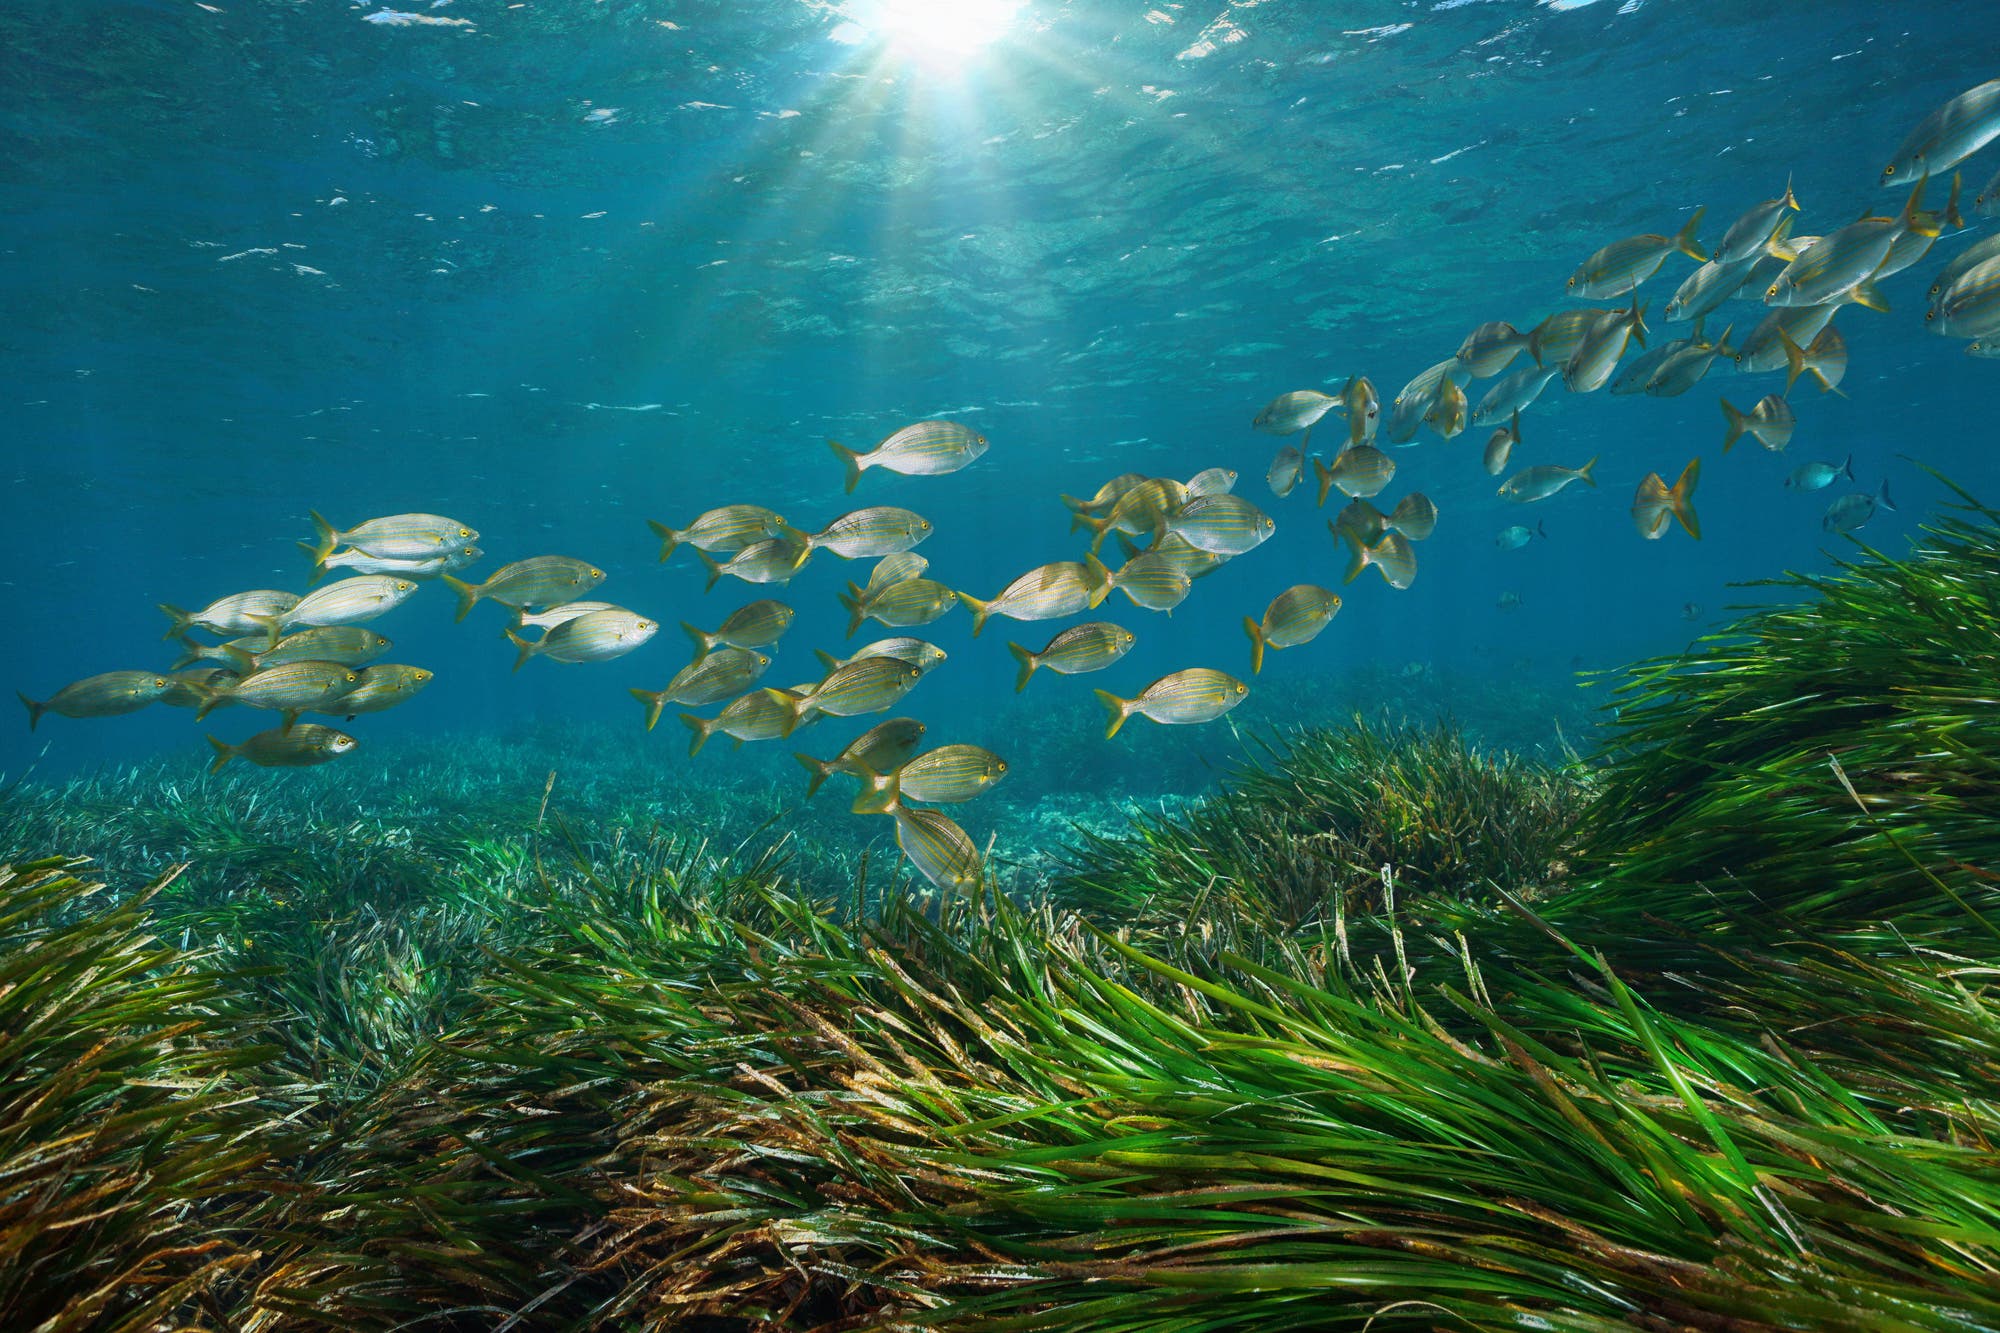 Ein Schwarm Fische zieht im blauen Meer über eine grüne Seegraswiese. Die Sonne strahlt durchs Wasser